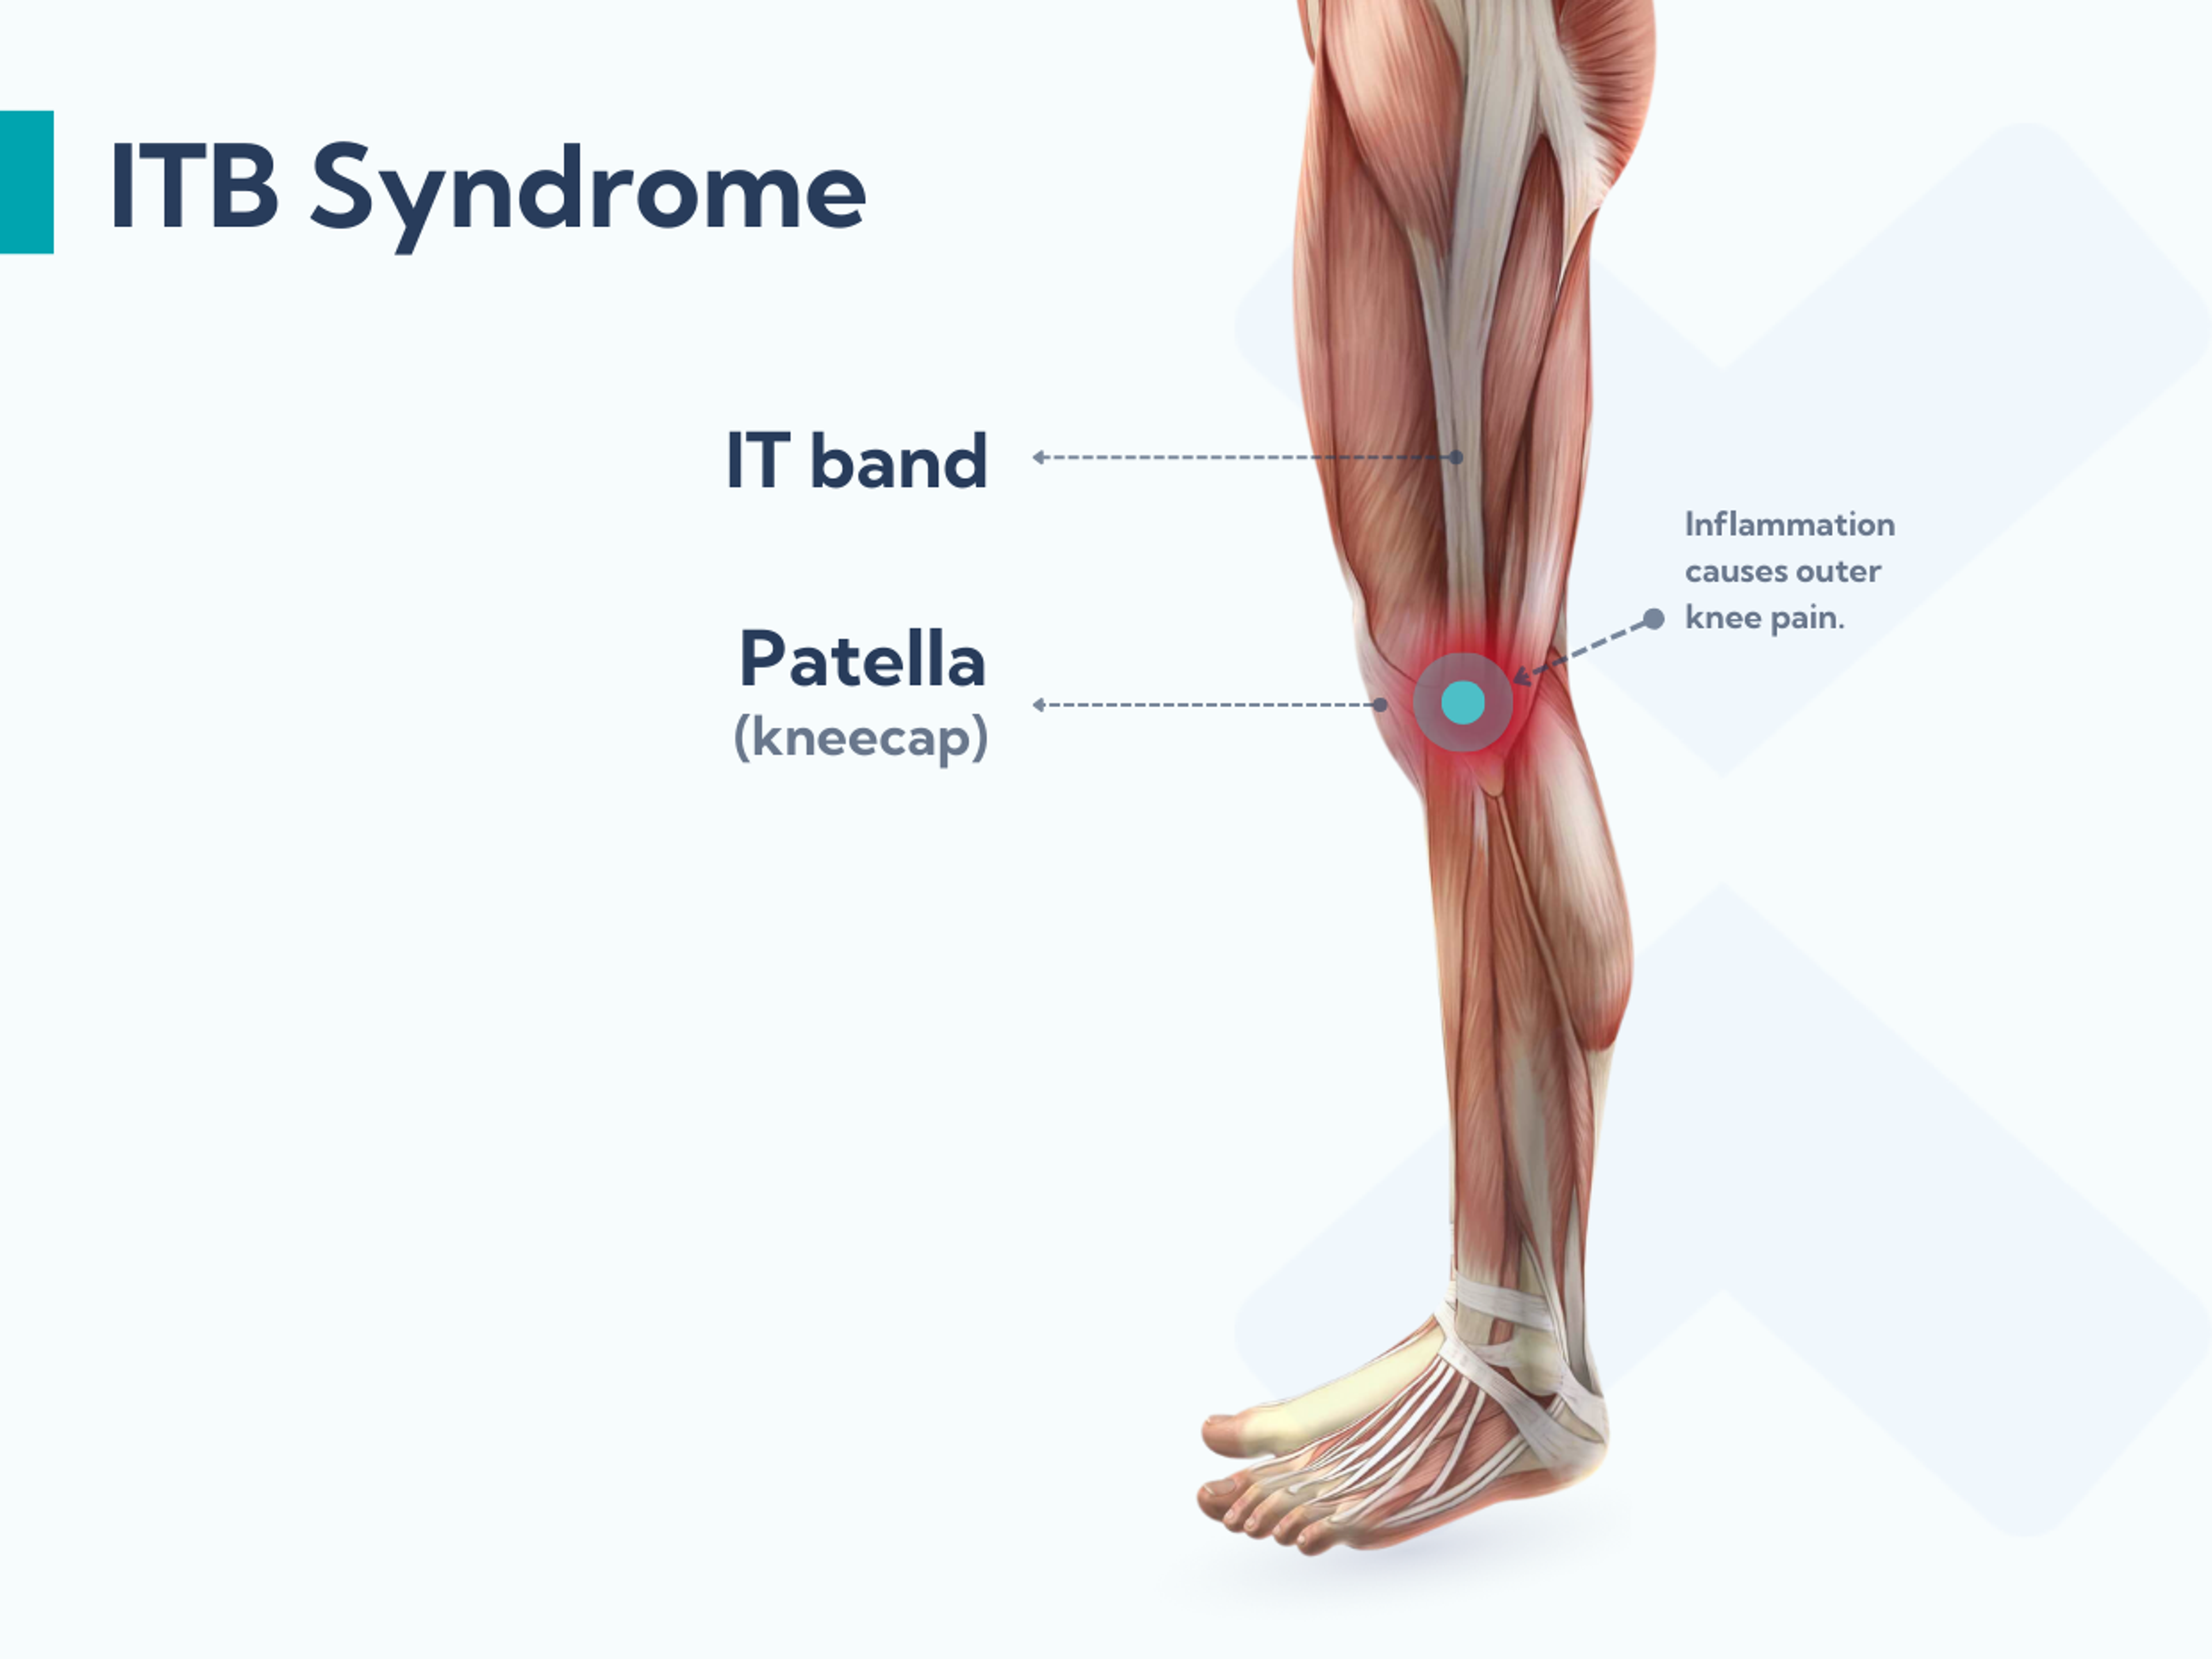 El síndrome de la cintilla iliotibial es una lesión por sobreesfuerzo que ocasiona dolor en la zona de la cintilla y la cara externa de la rodilla.